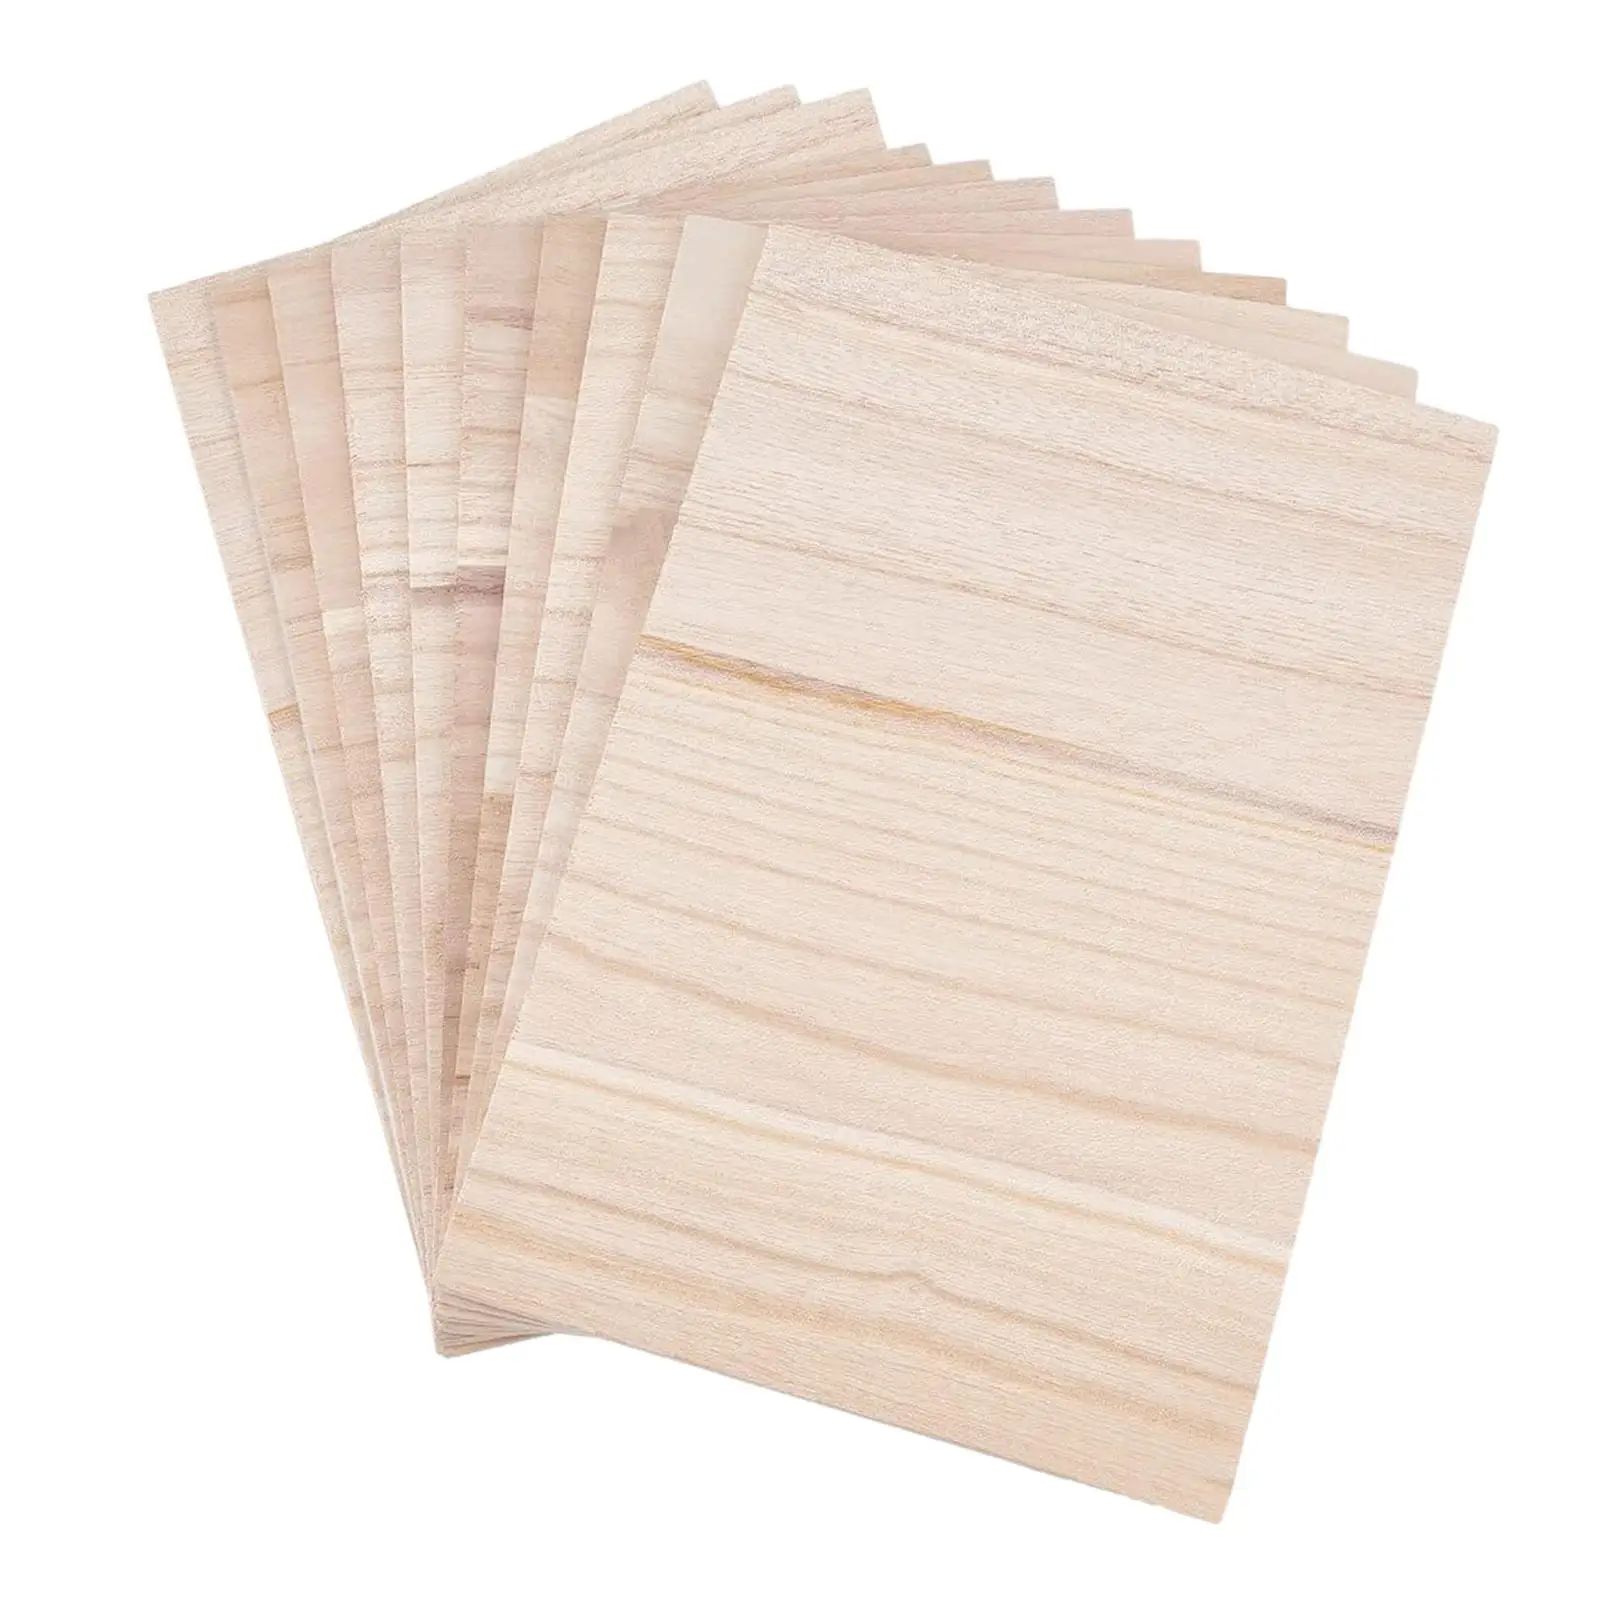 10x Taekwondo Breaking Board Wood Breaking Board Wooden Supply Portable Punching